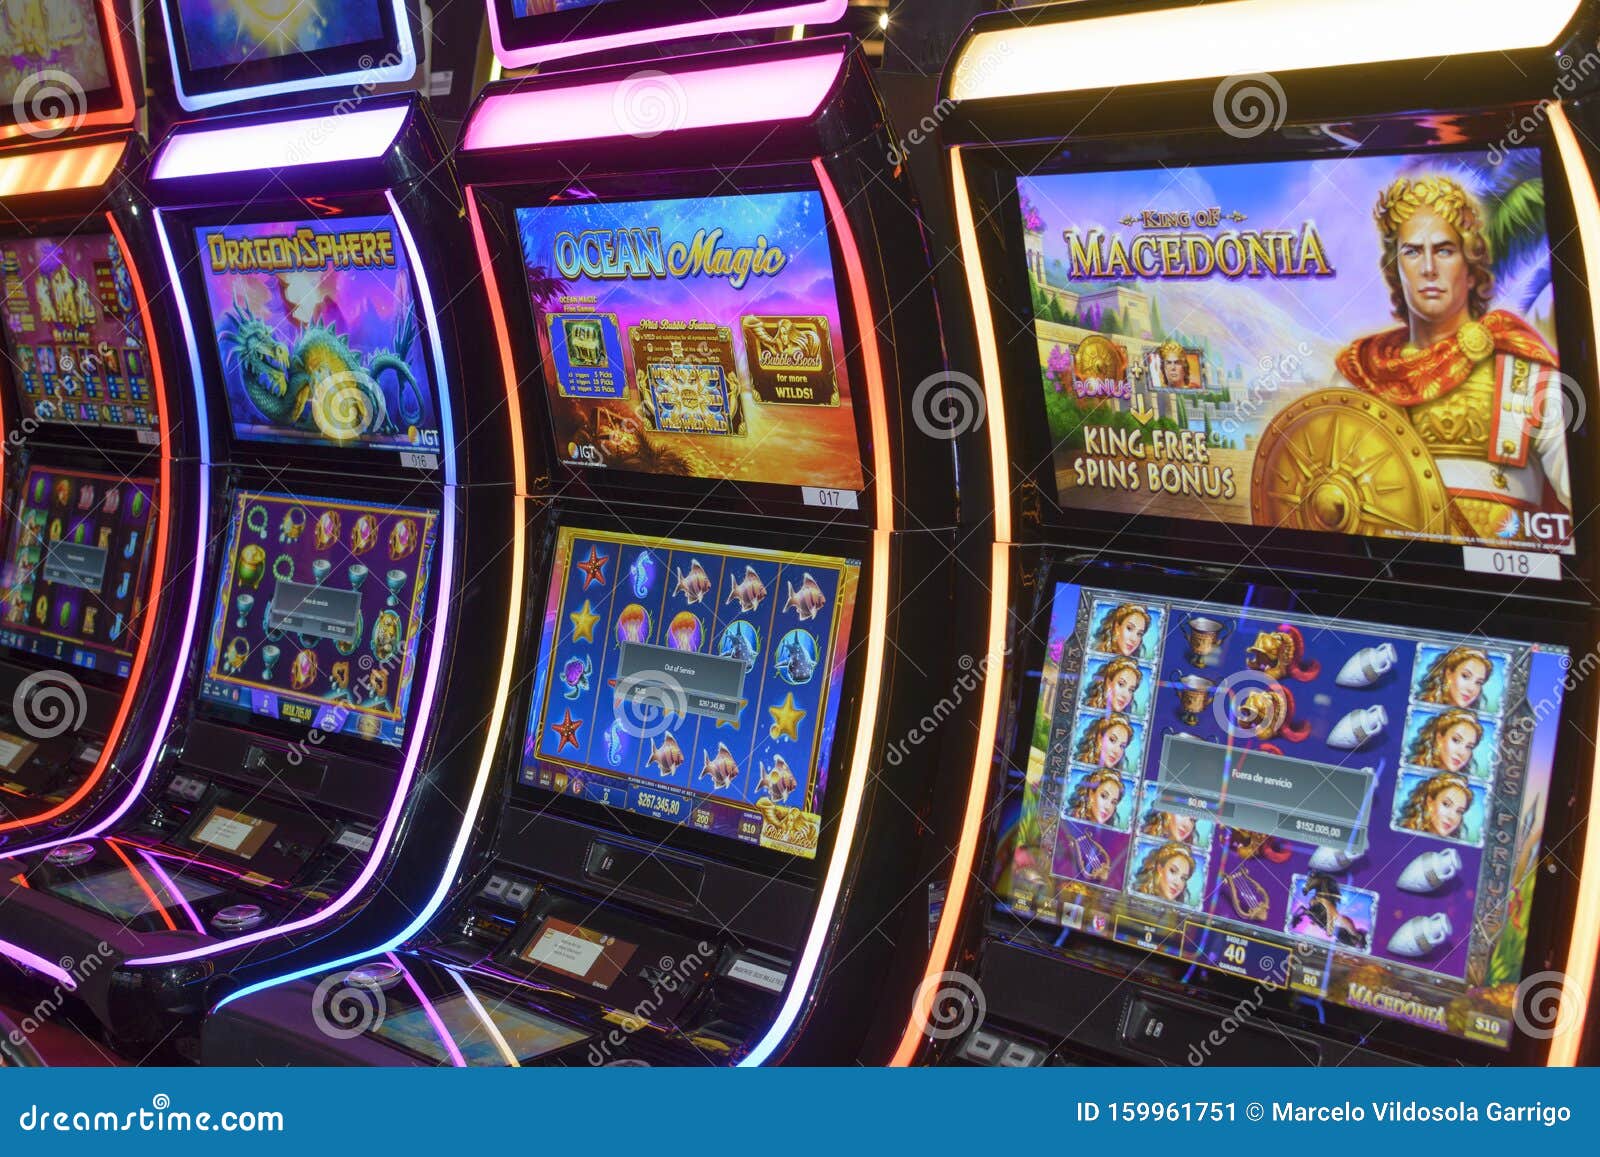 ¿Quiere un negocio próspero? ¡Concéntrese en Casinos Online Chile!